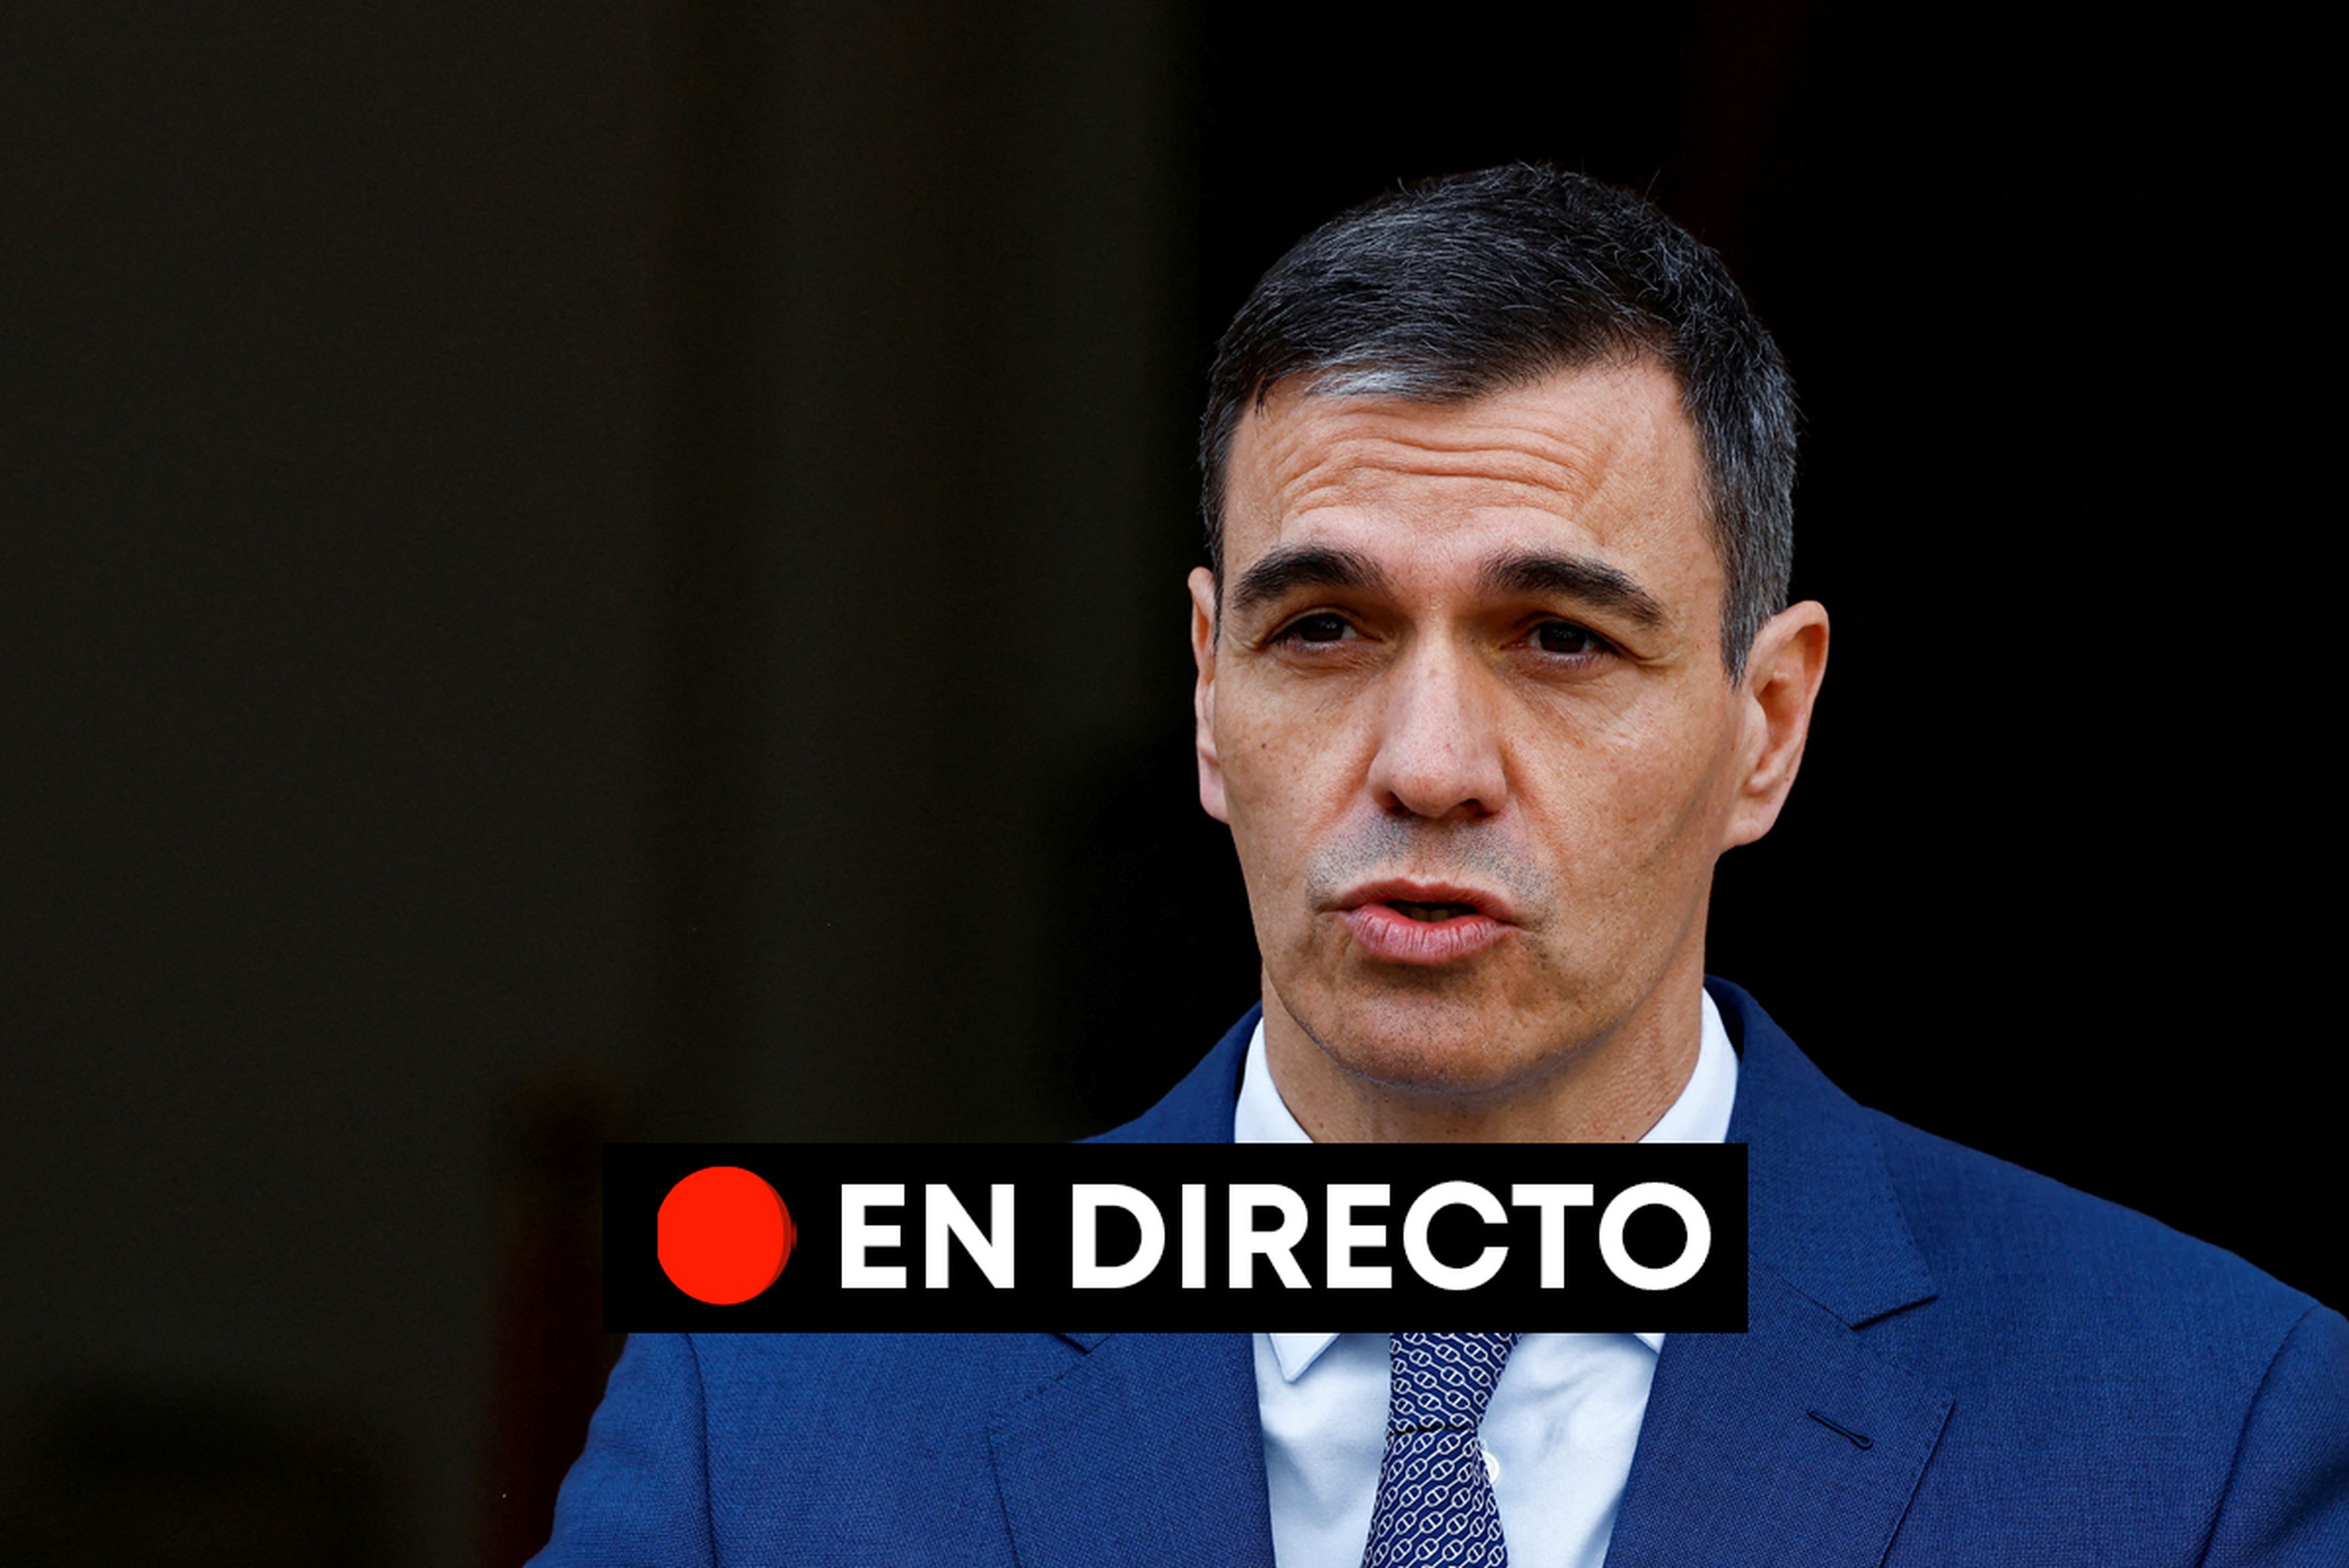 La posible dimisión de Pedro Sánchez, en directo.